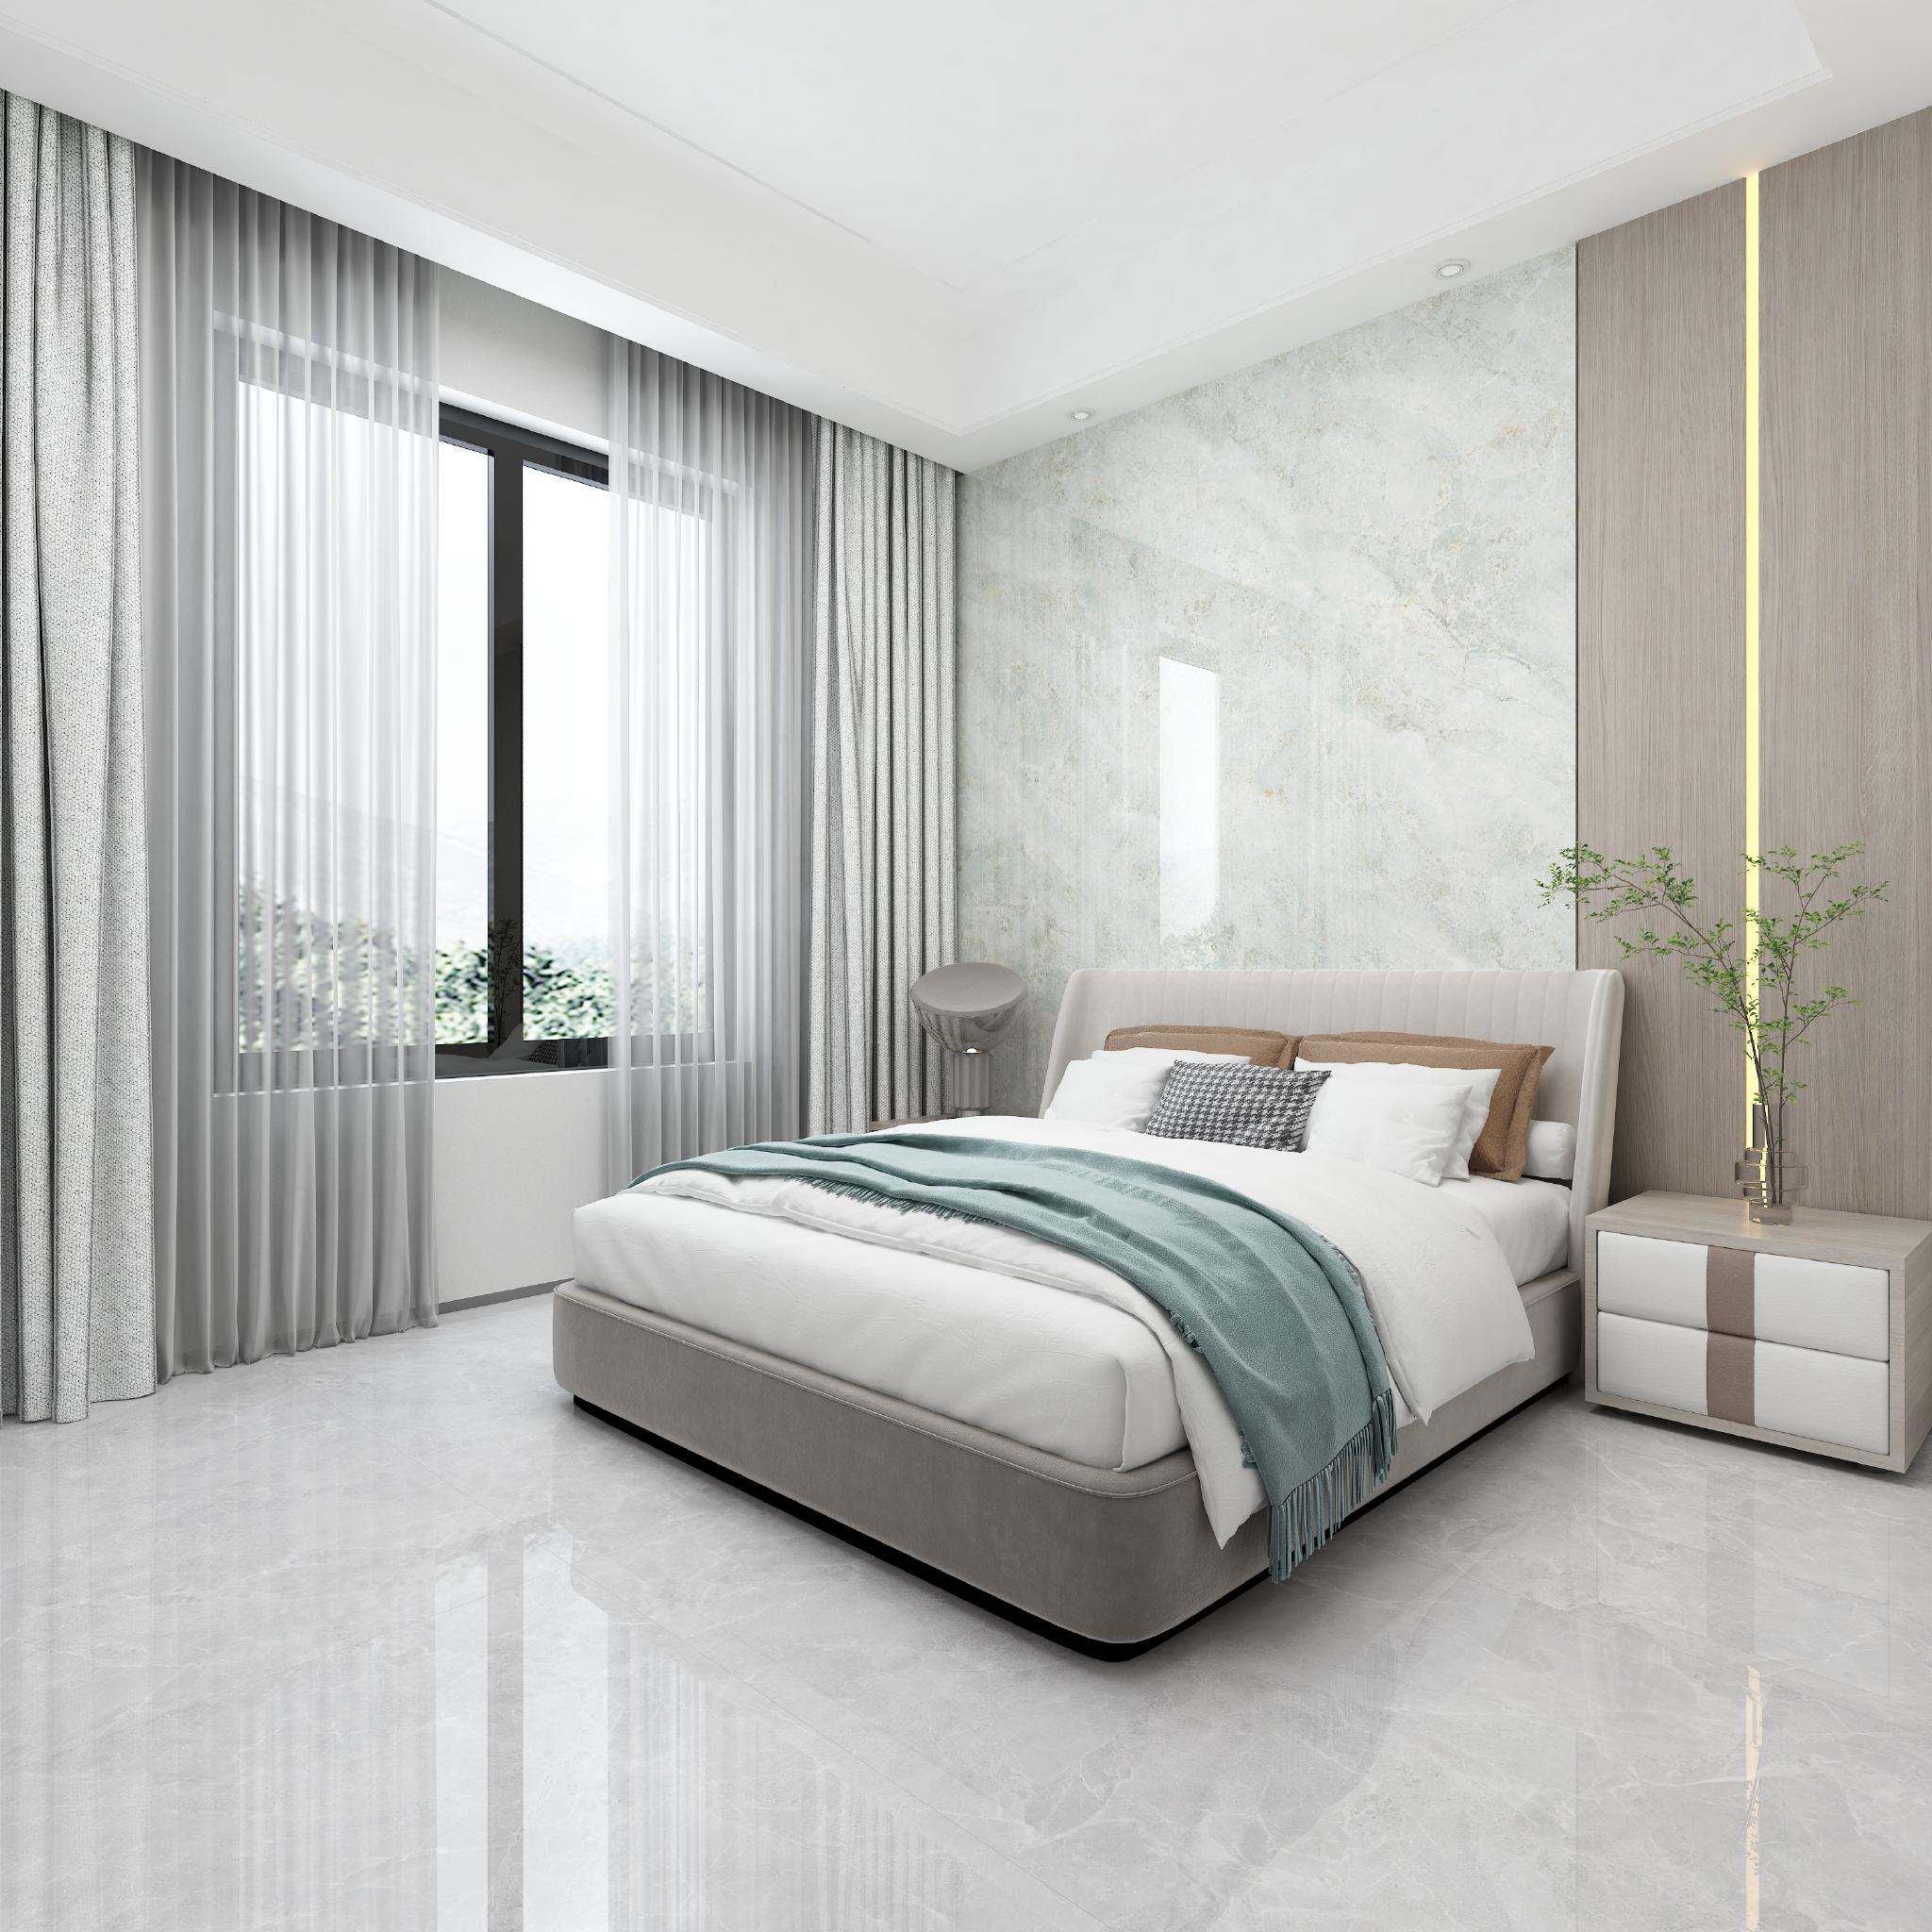 卧室以浅灰色为基调,铺地灰色的瓷砖,搭配床头浅翠的一片到顶背景墙